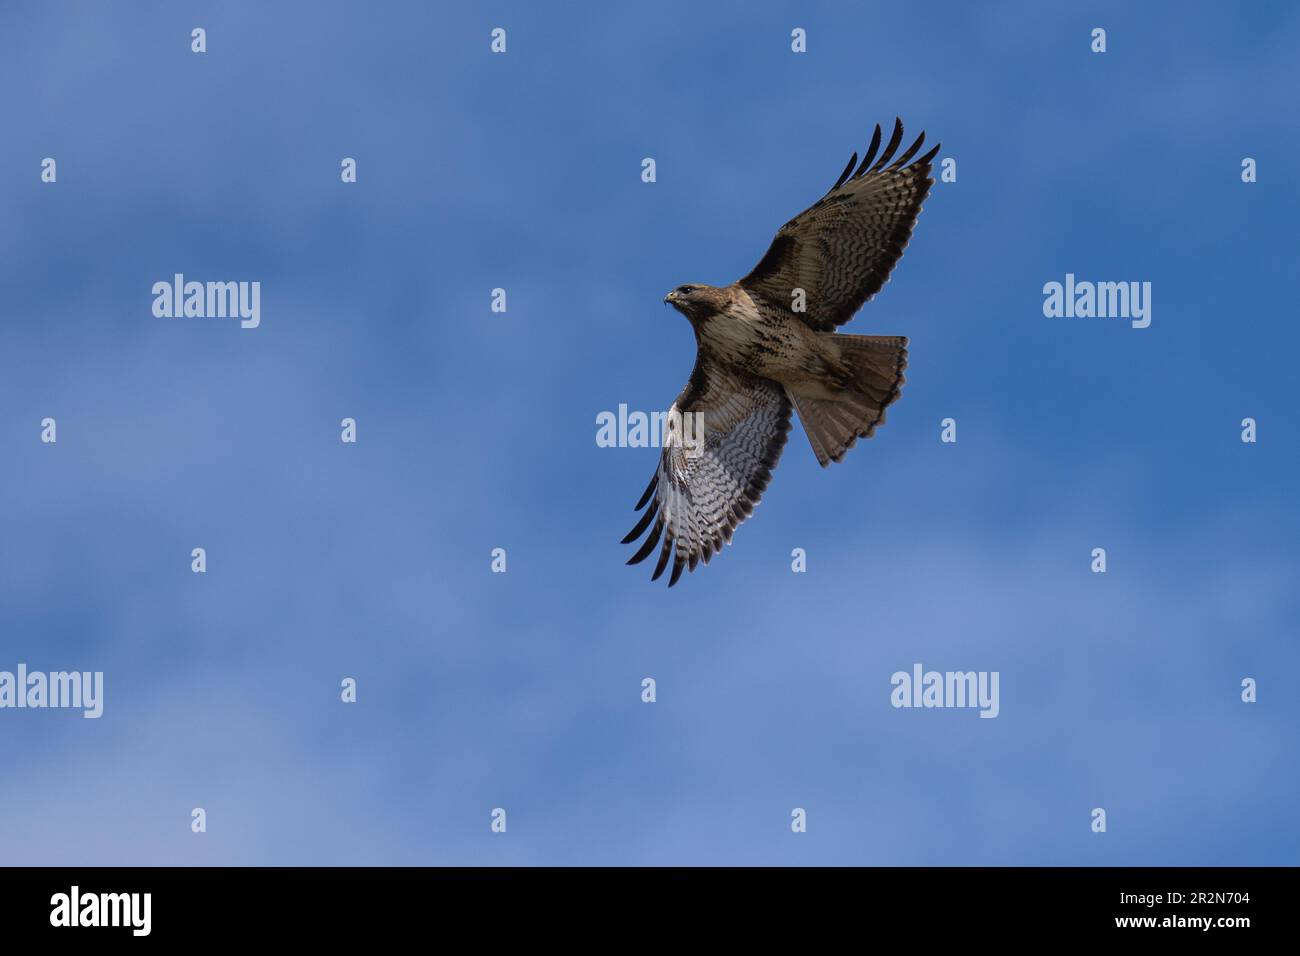 Faucon rouge volant en vol. Ashland, Oregon Banque D'Images